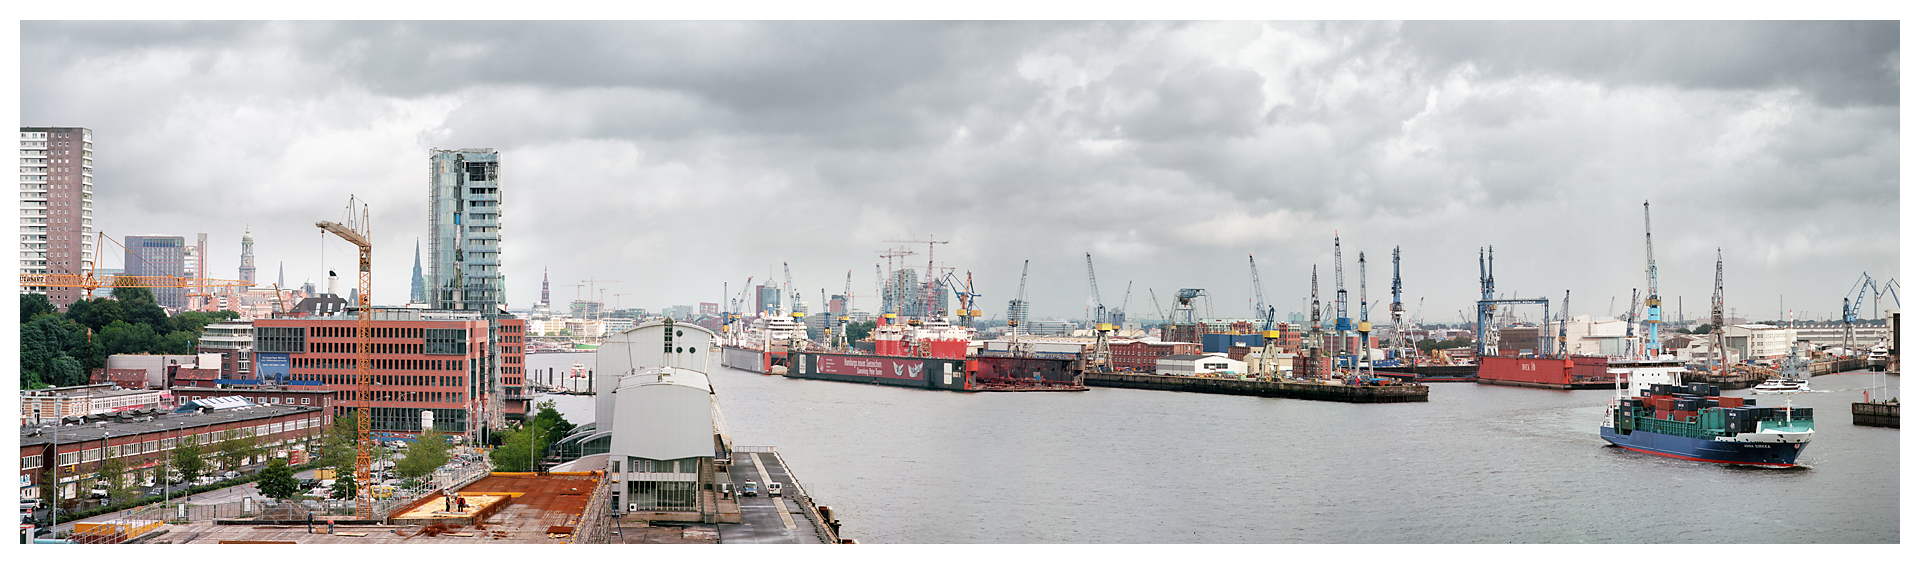 Hamburg - Panorama des Hafens vom Teherani Haus